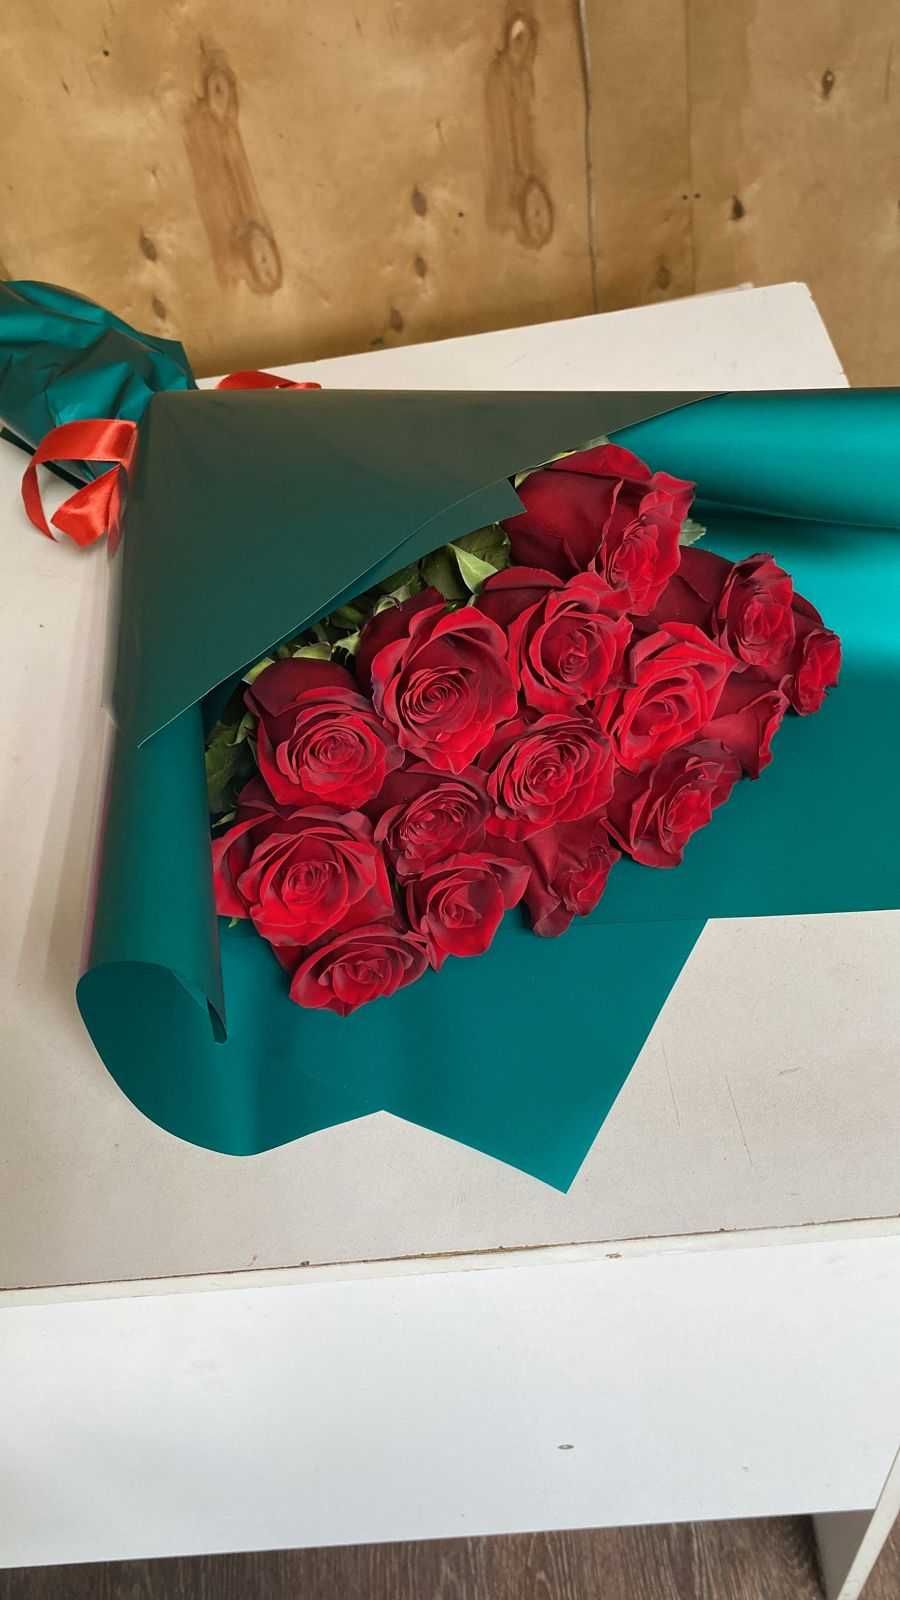 Розы цветы букеты Костанай Доставка